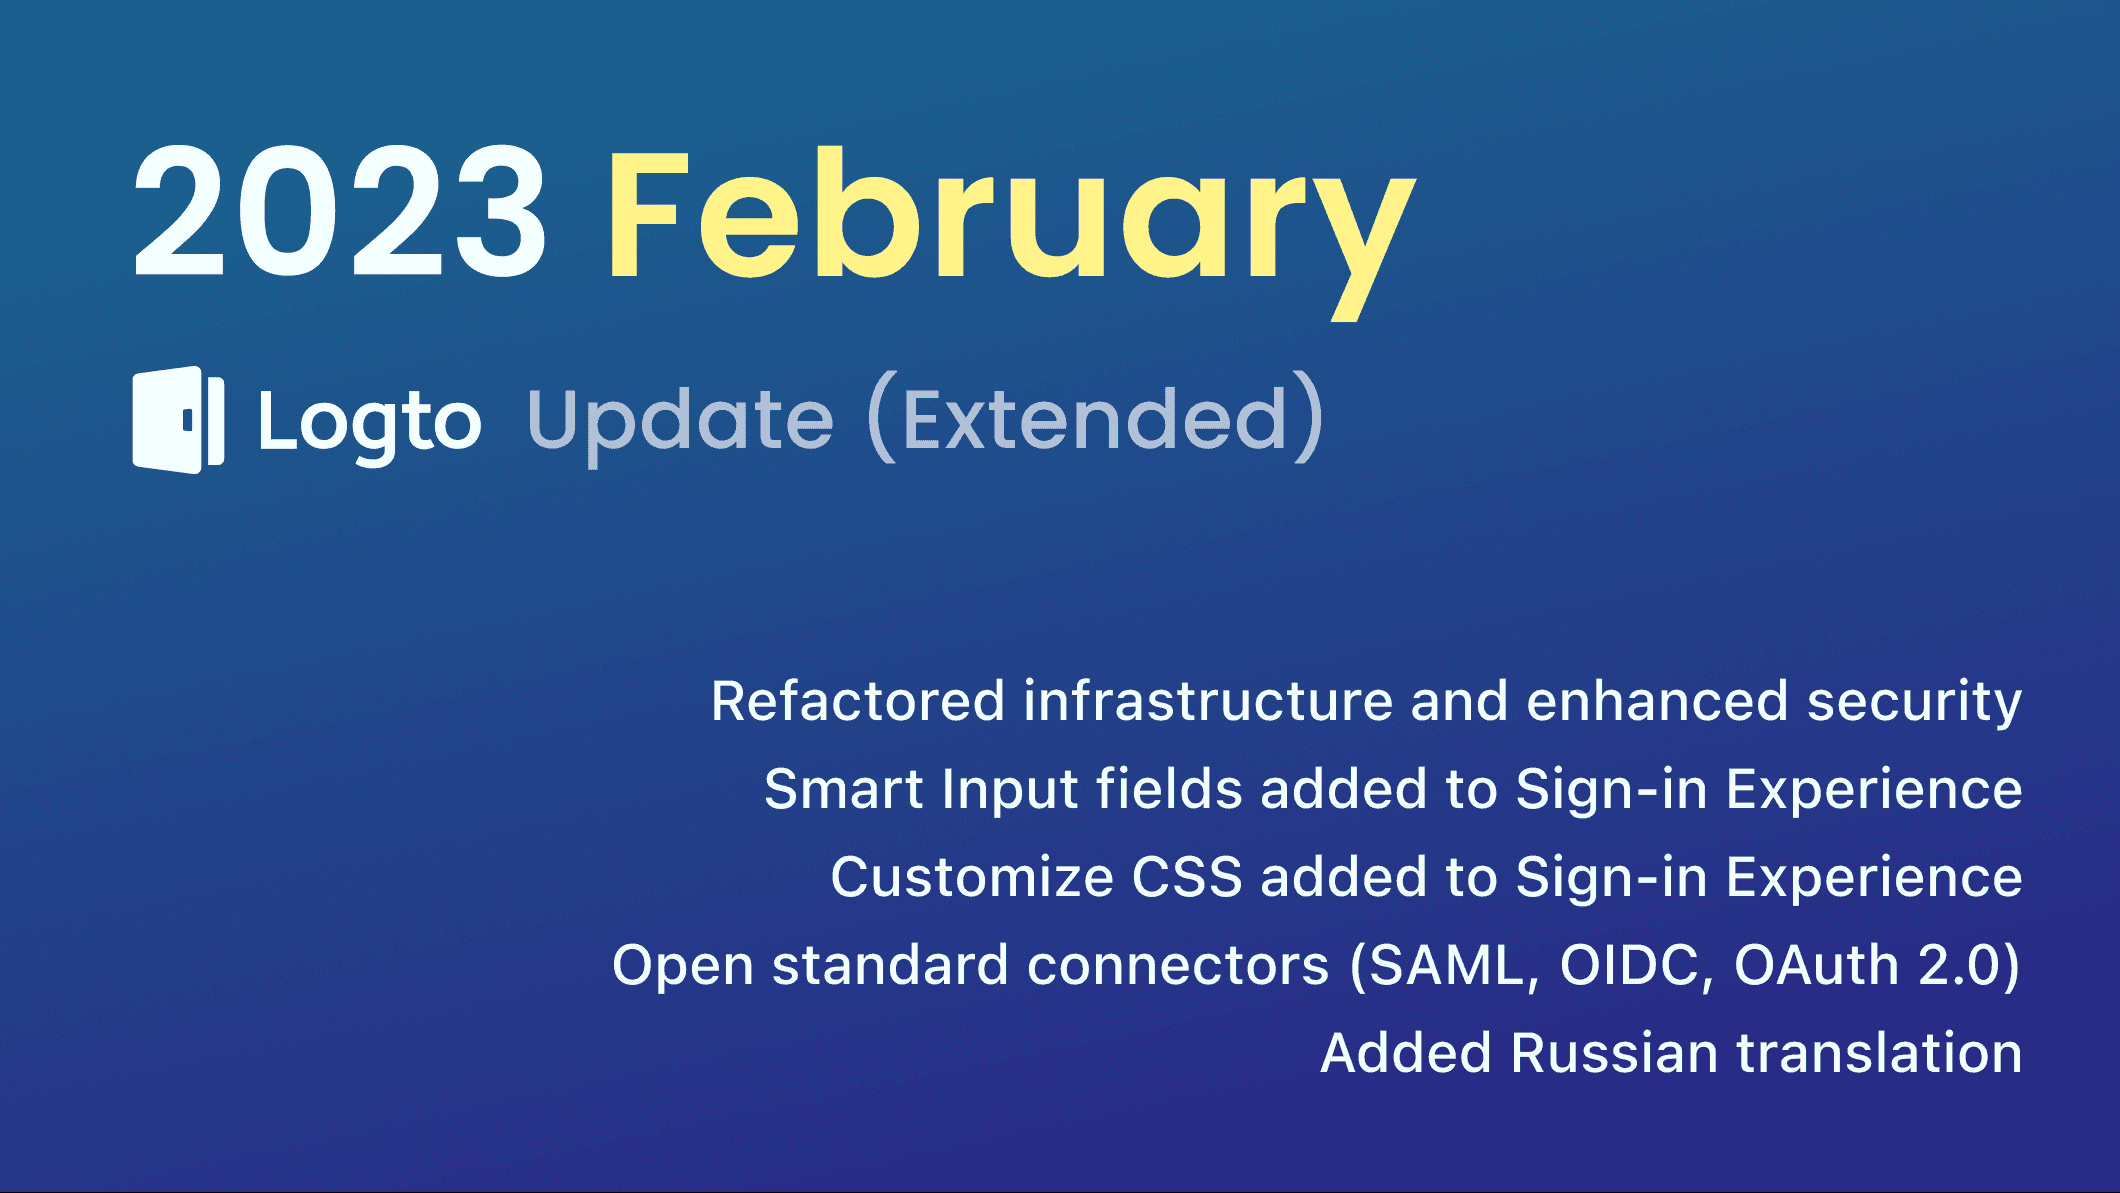 Logto 2023 February update (extended)